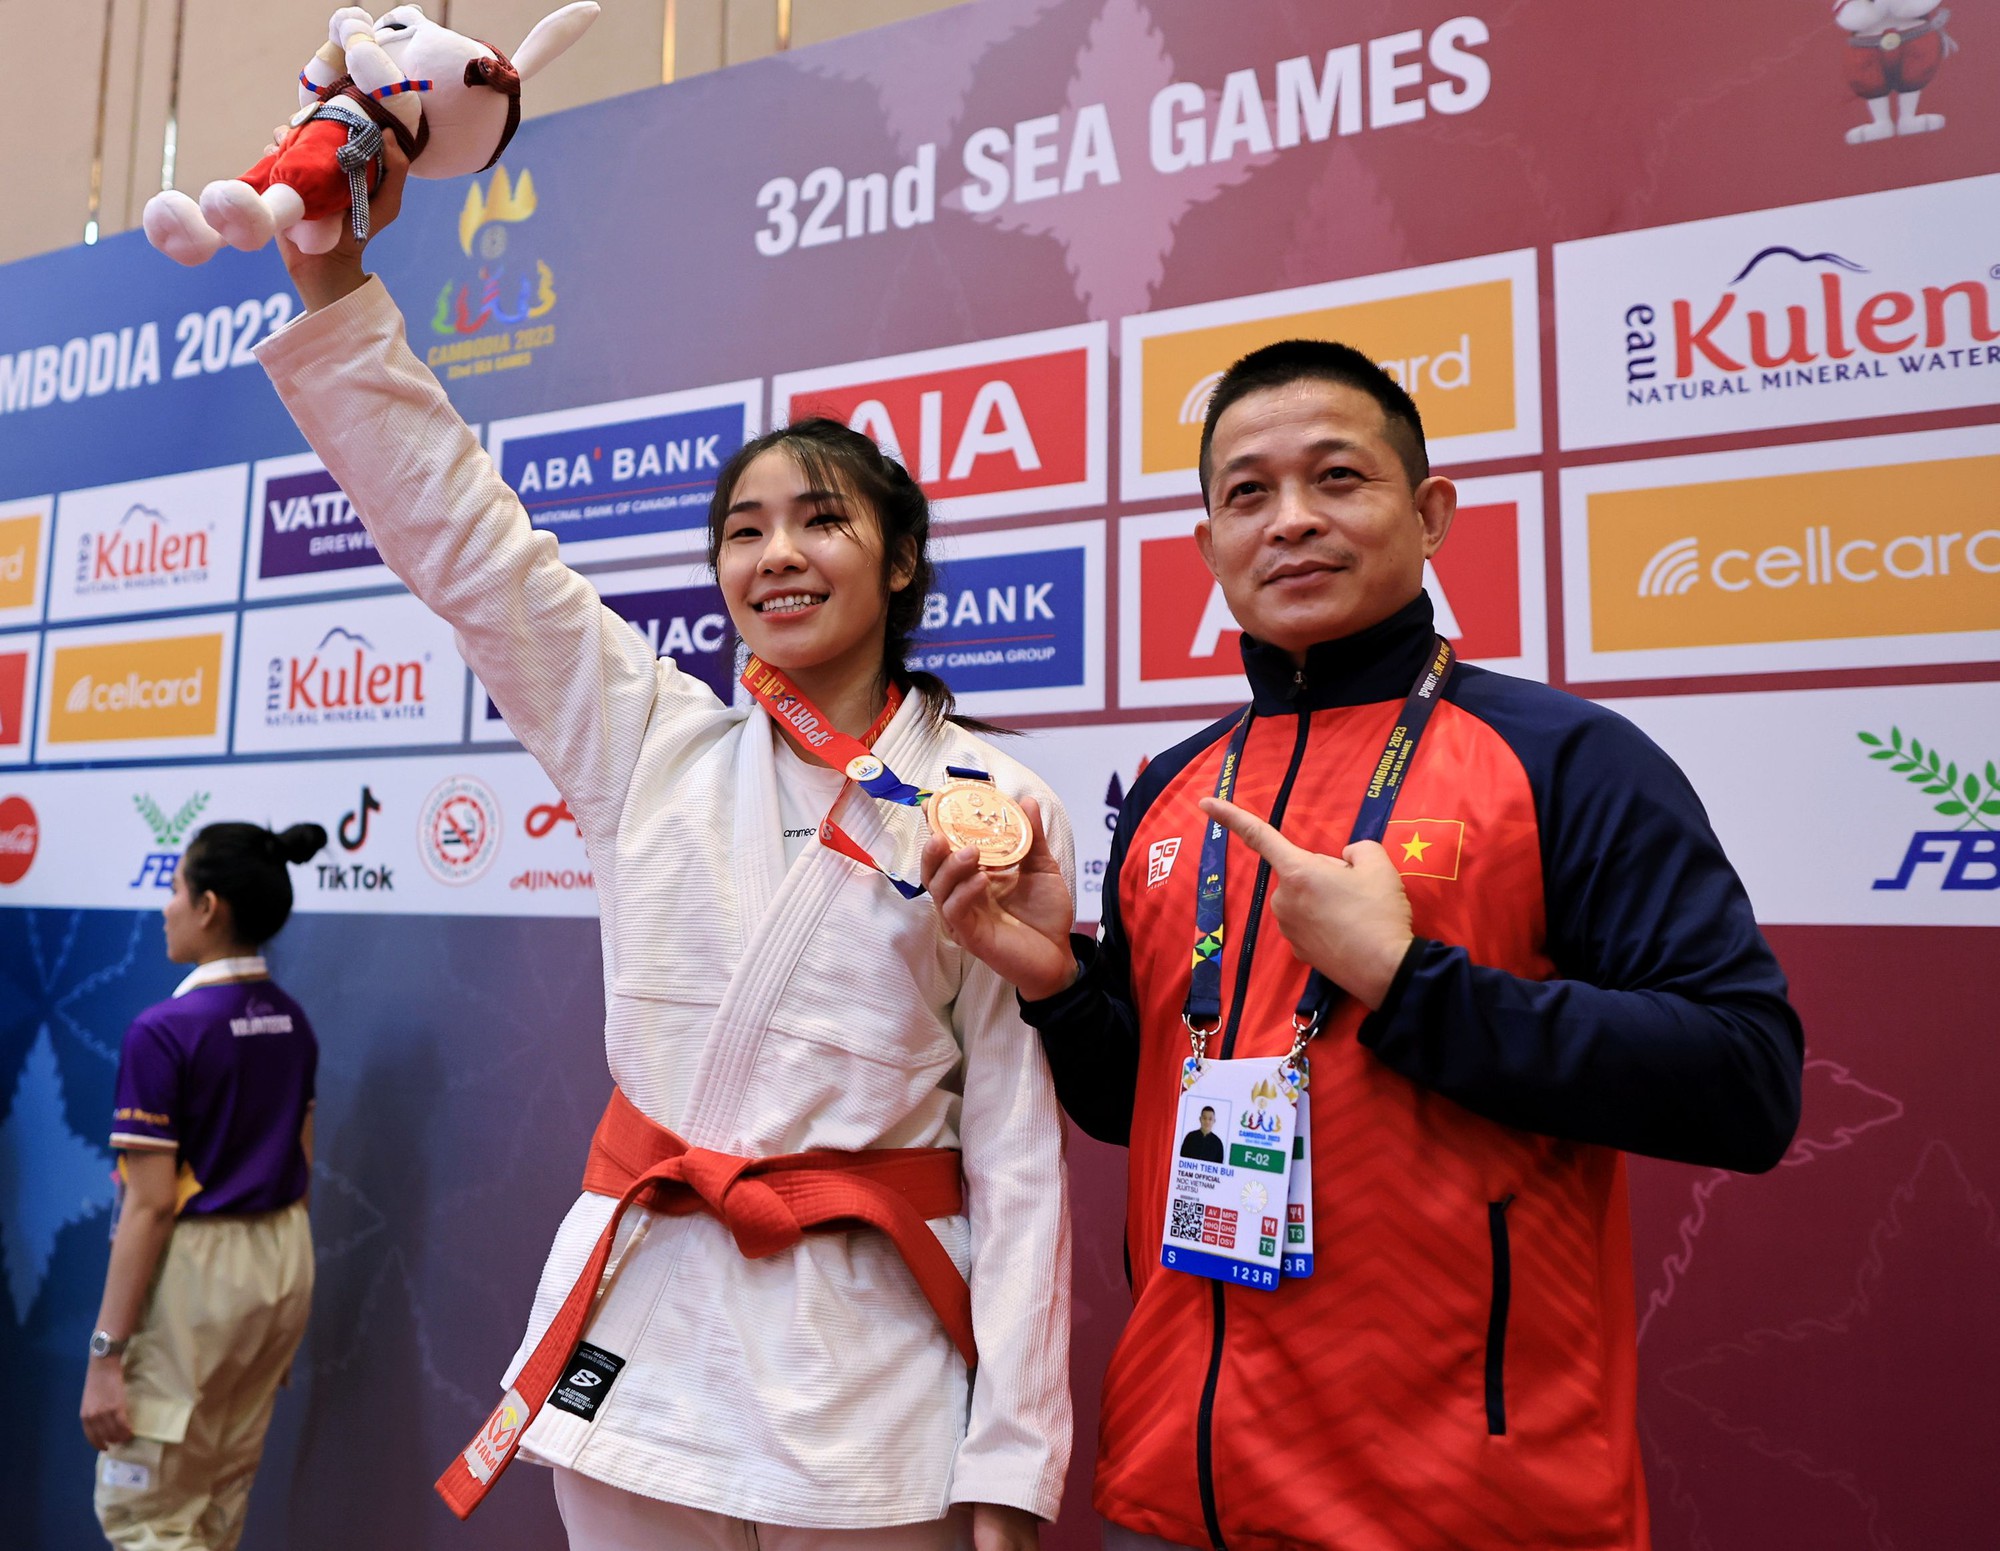 Cận cảnh võ sĩ Việt Nam đầu tiên được trao huy chương SEA Games 32 - Ảnh 1.